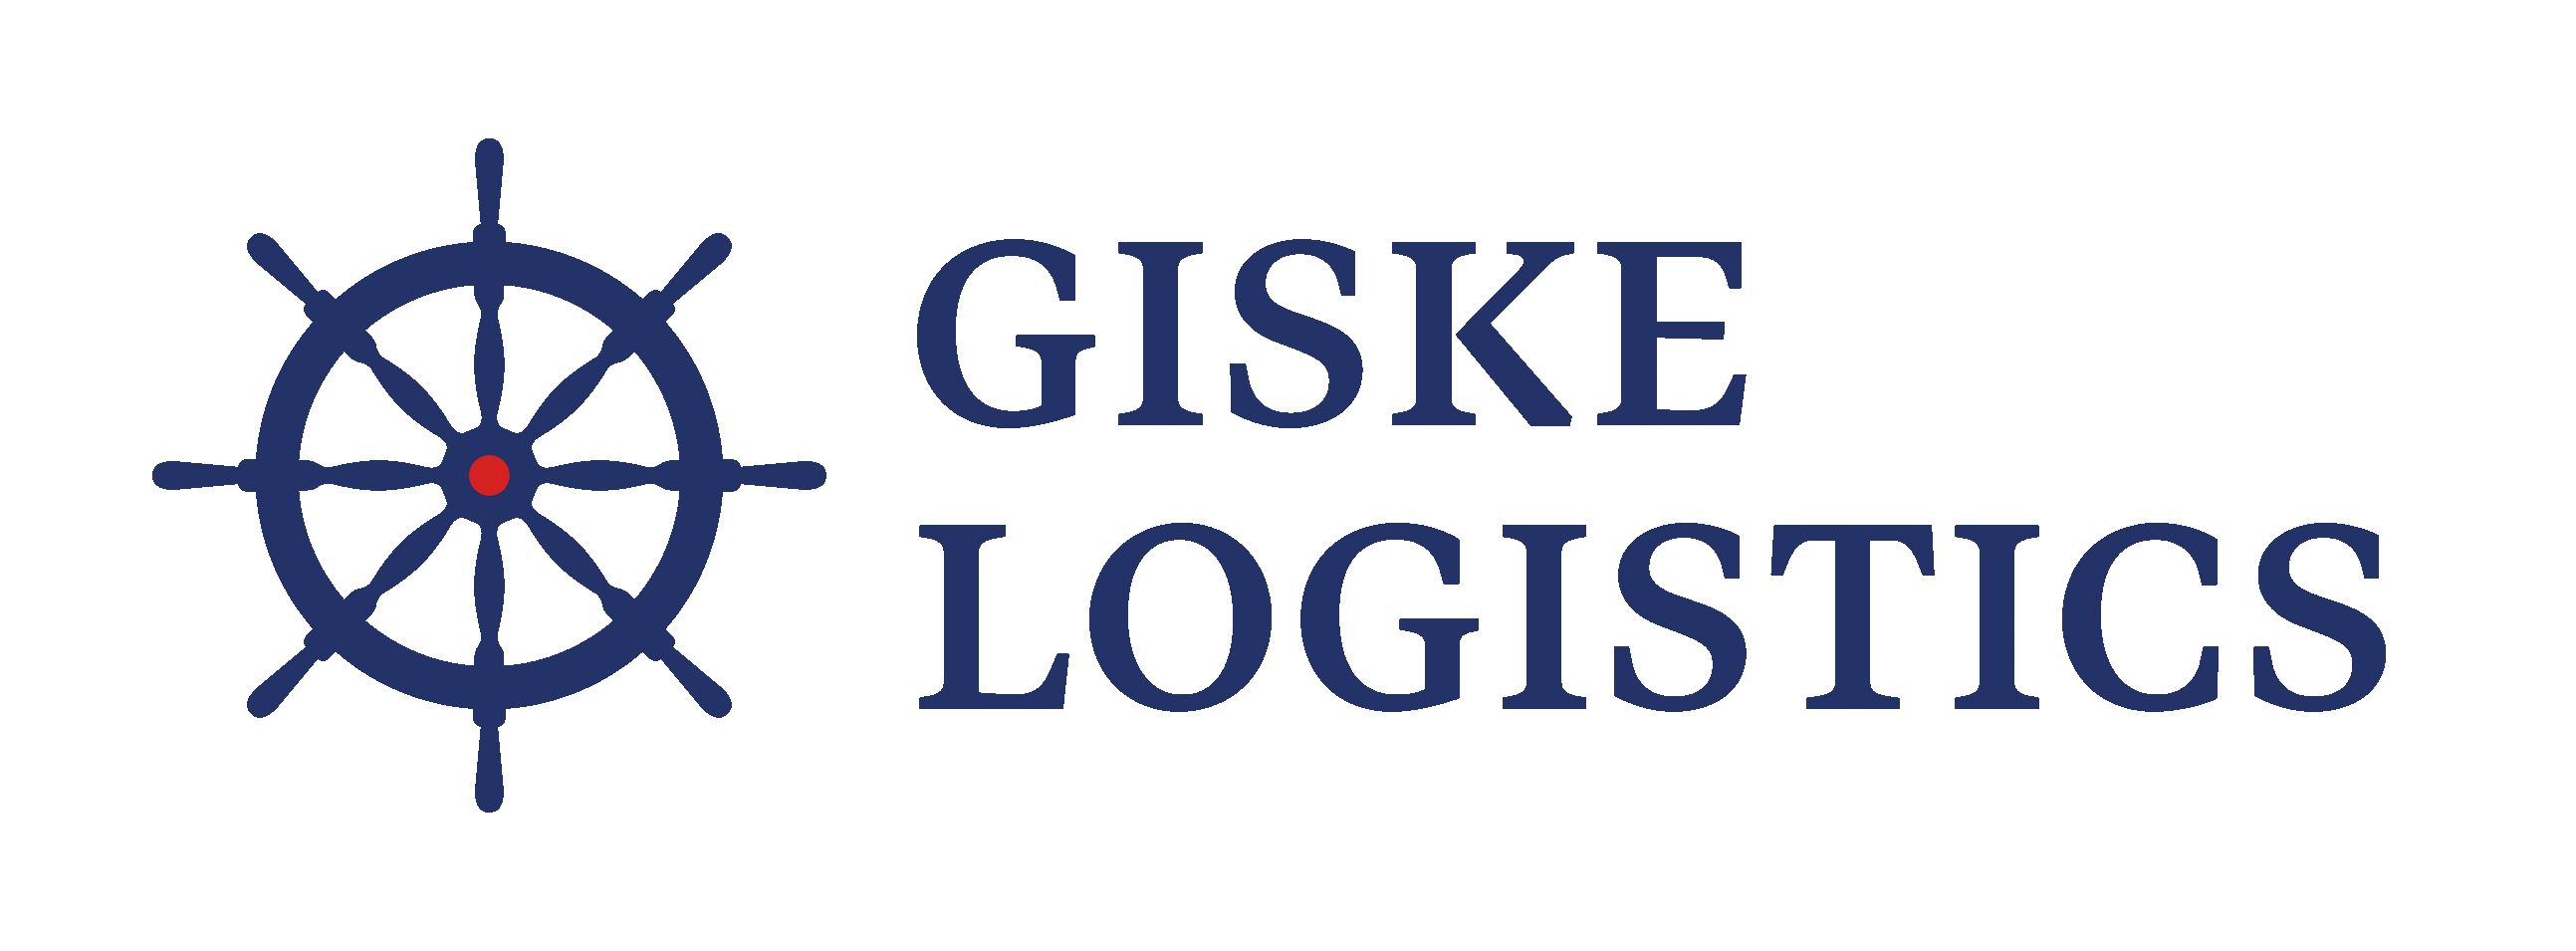 Giske Logistics As